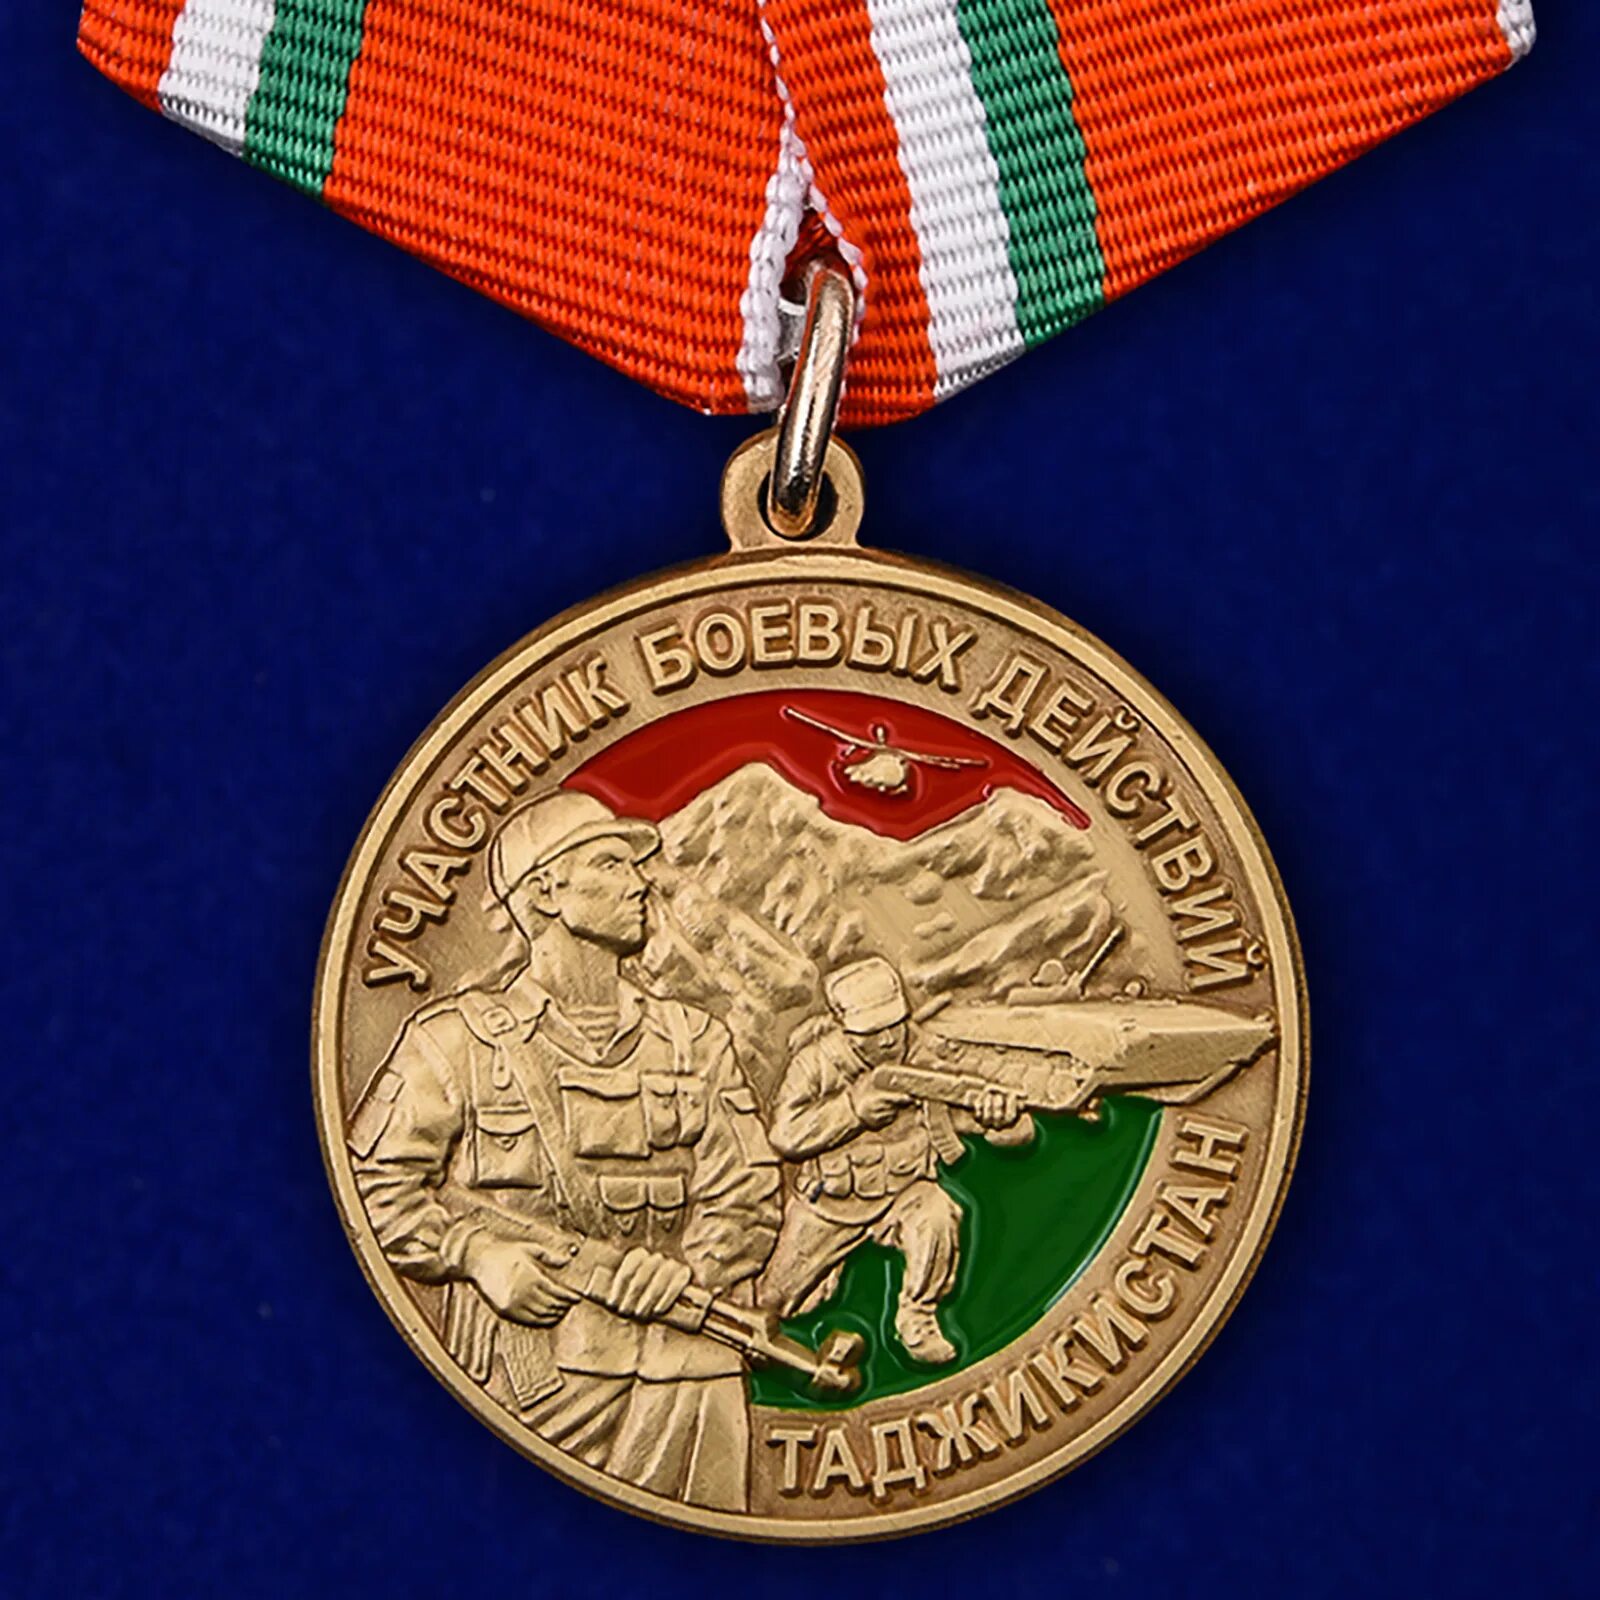 Медаль воин интернационалист Таджикистан. Медаль участник боевых действий в Таджикистане. Медаль воин интернационалист ДНР. Медаль за Таджикистан 1992-1997.